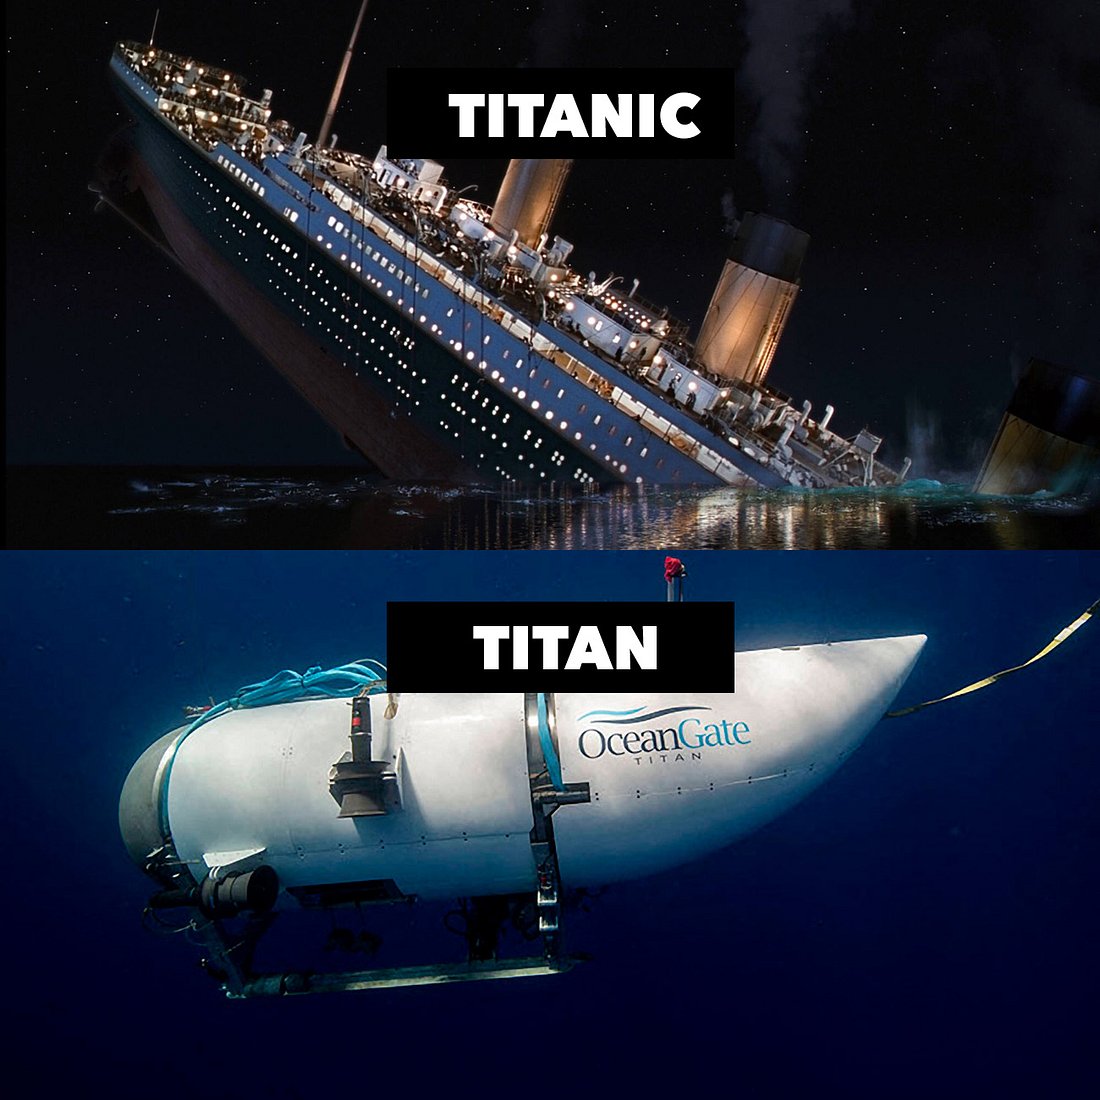 Titanic-Macher James Cameron erklärt gruselige Parallelen zur Titan